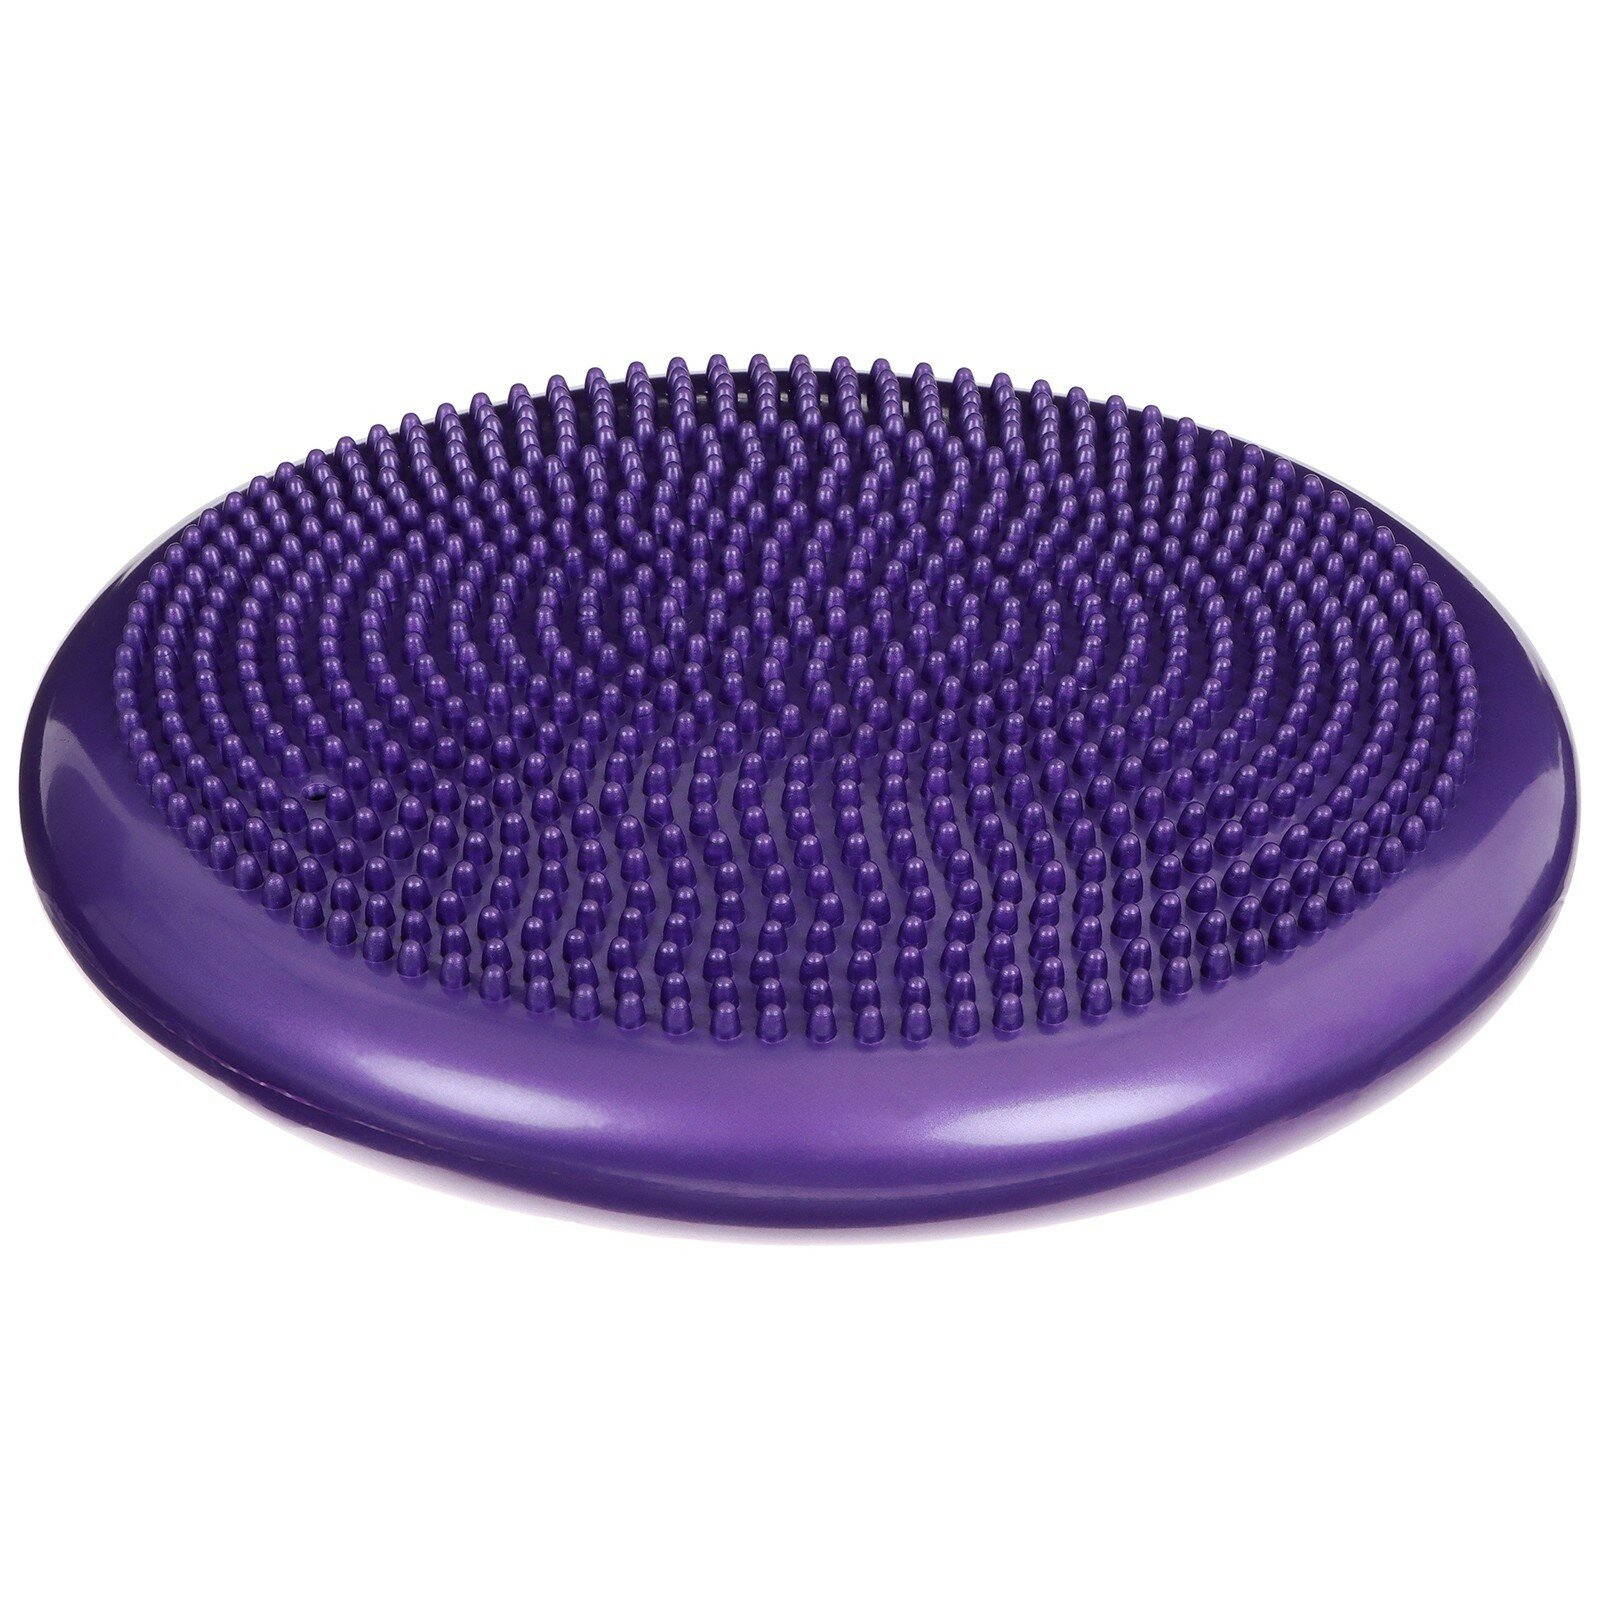 Подушка балансировочная, массажная, d=35 см, цвет фиолетовый (1шт.)